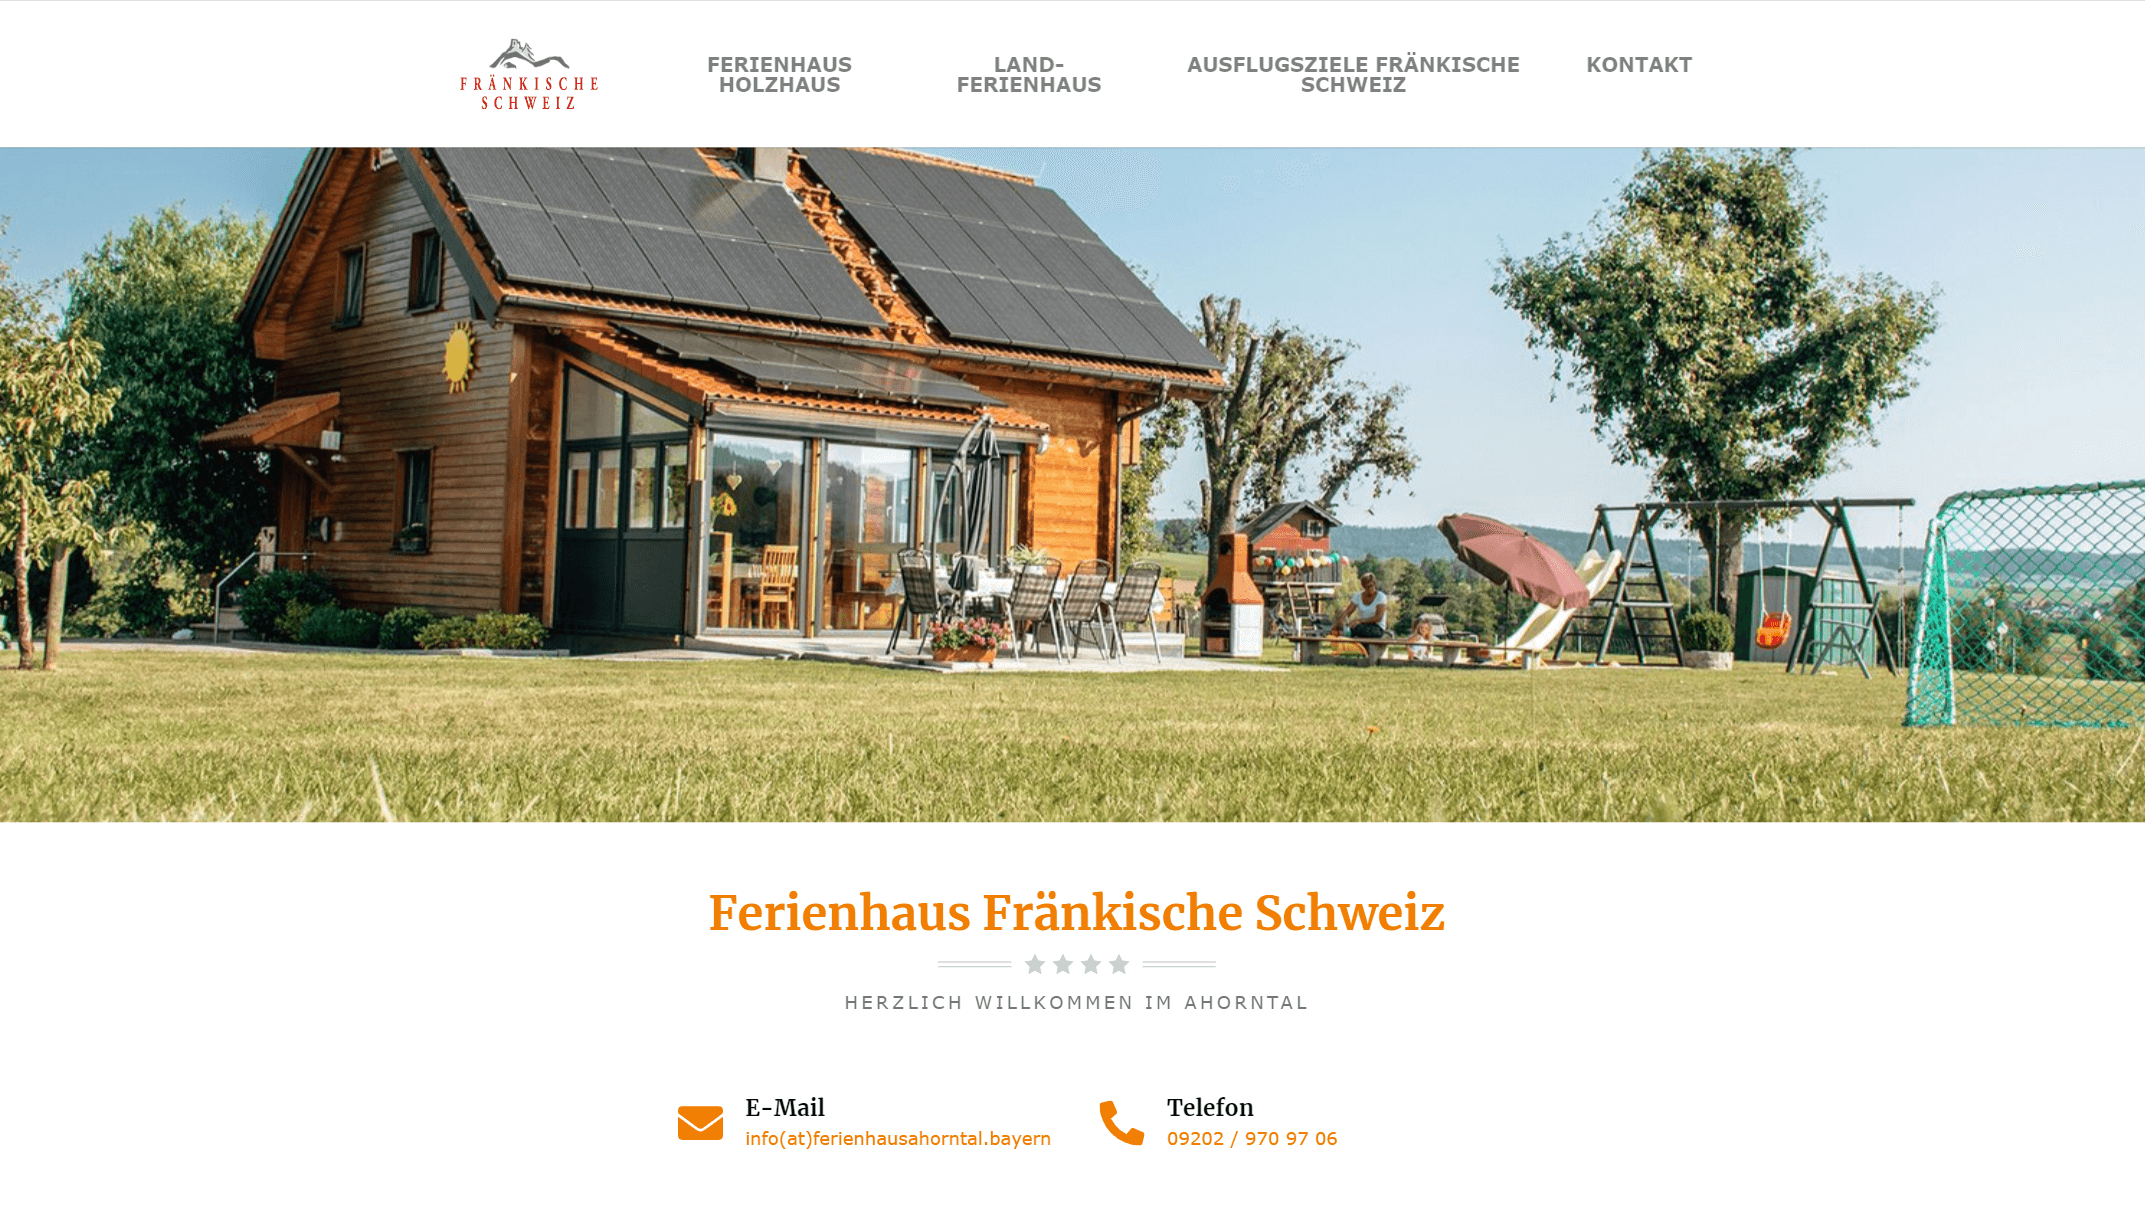 Füßmann Ferienhäuser im Ahorntal in der schönen Fränkische Schweiz